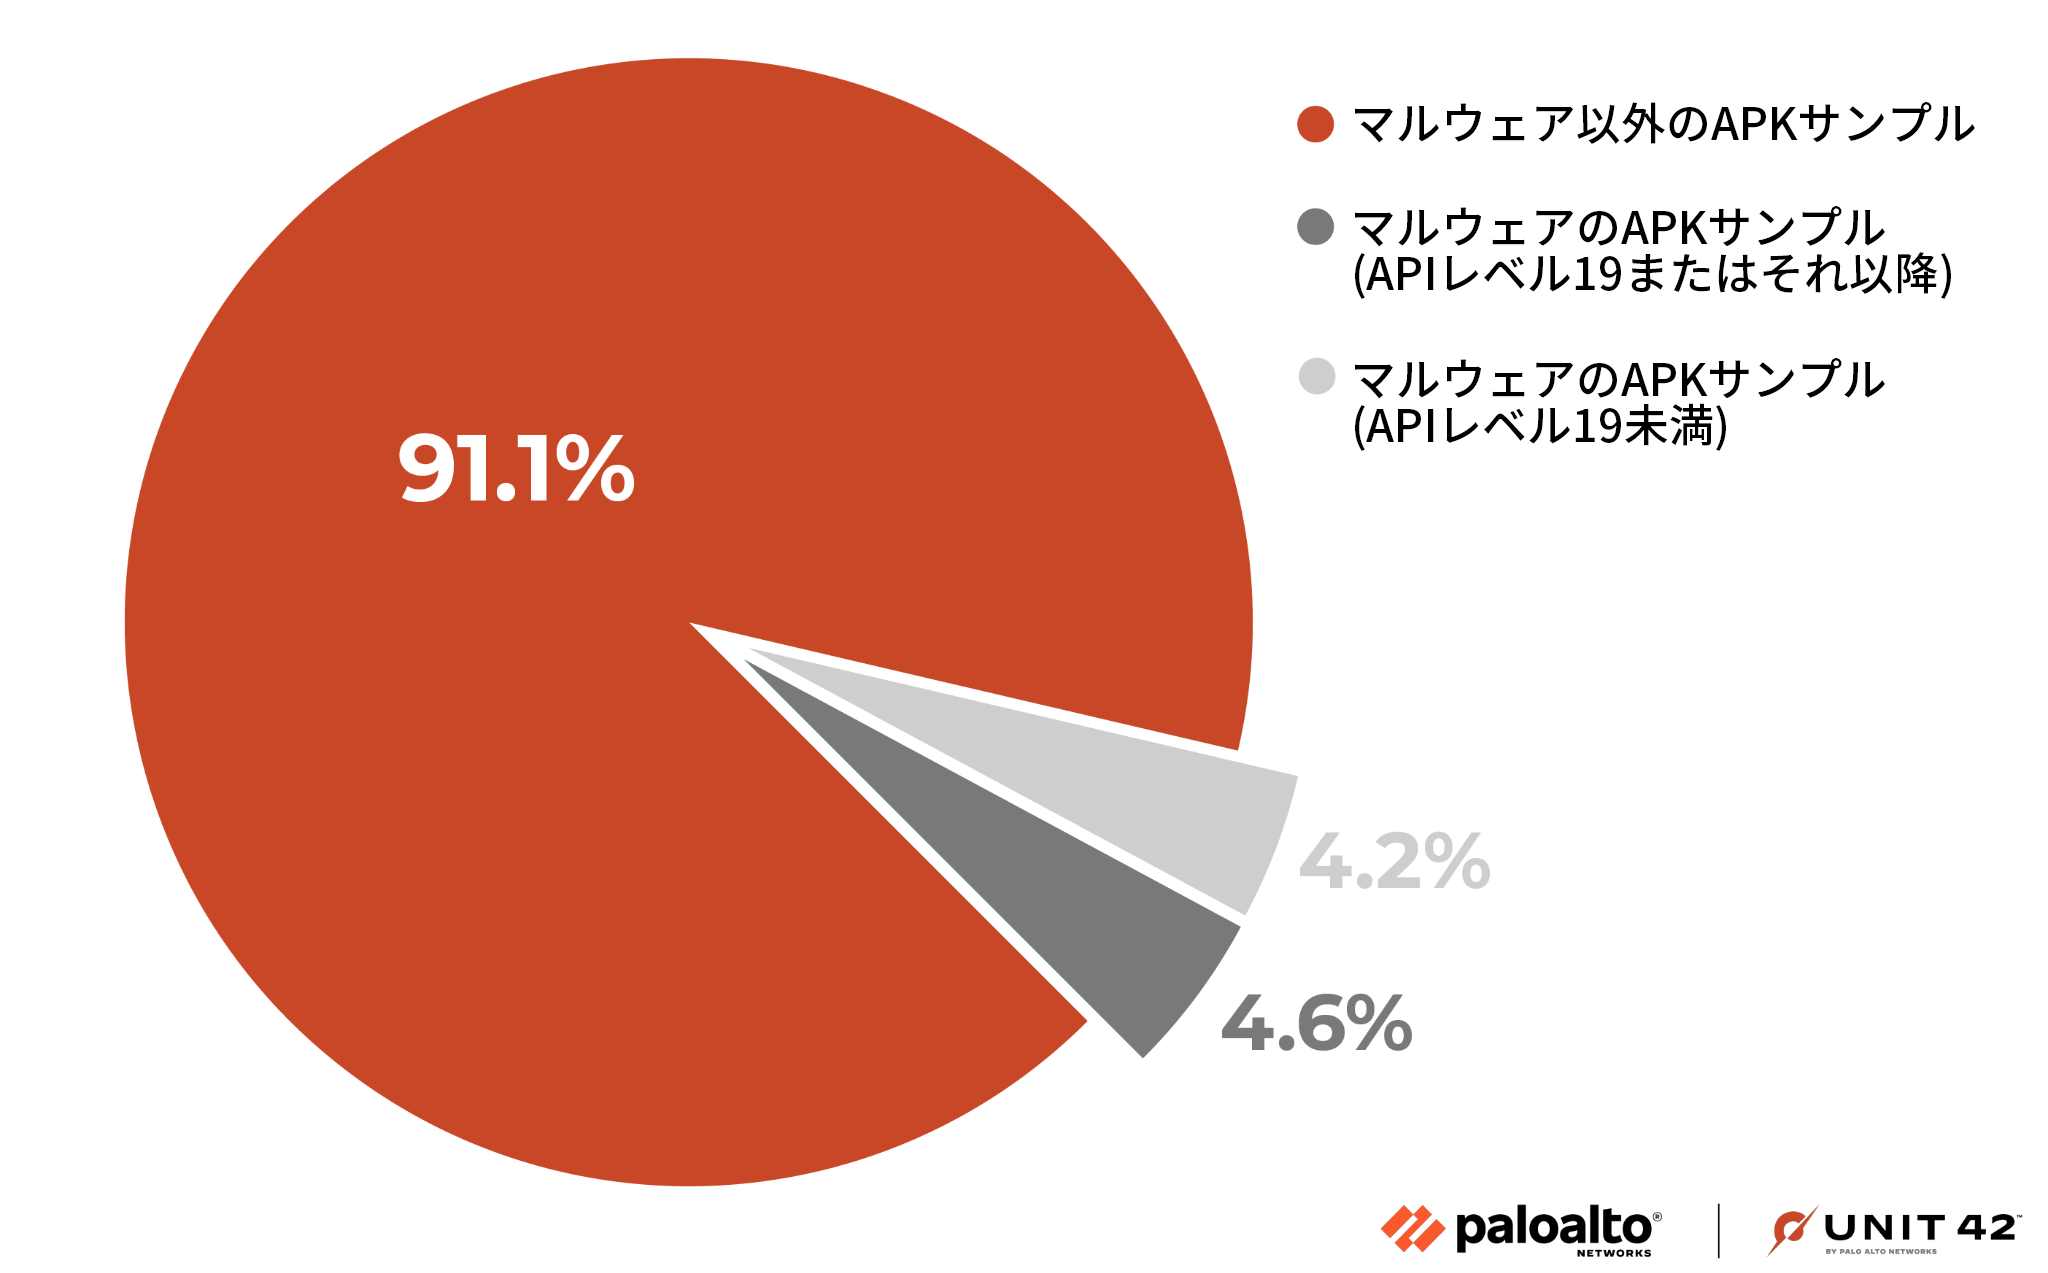 画像 4 は弊社社内テレメトリーで観測した APK サンプルを比較した円グラフです。最も多いのは非マルウェアで 91.1% です。